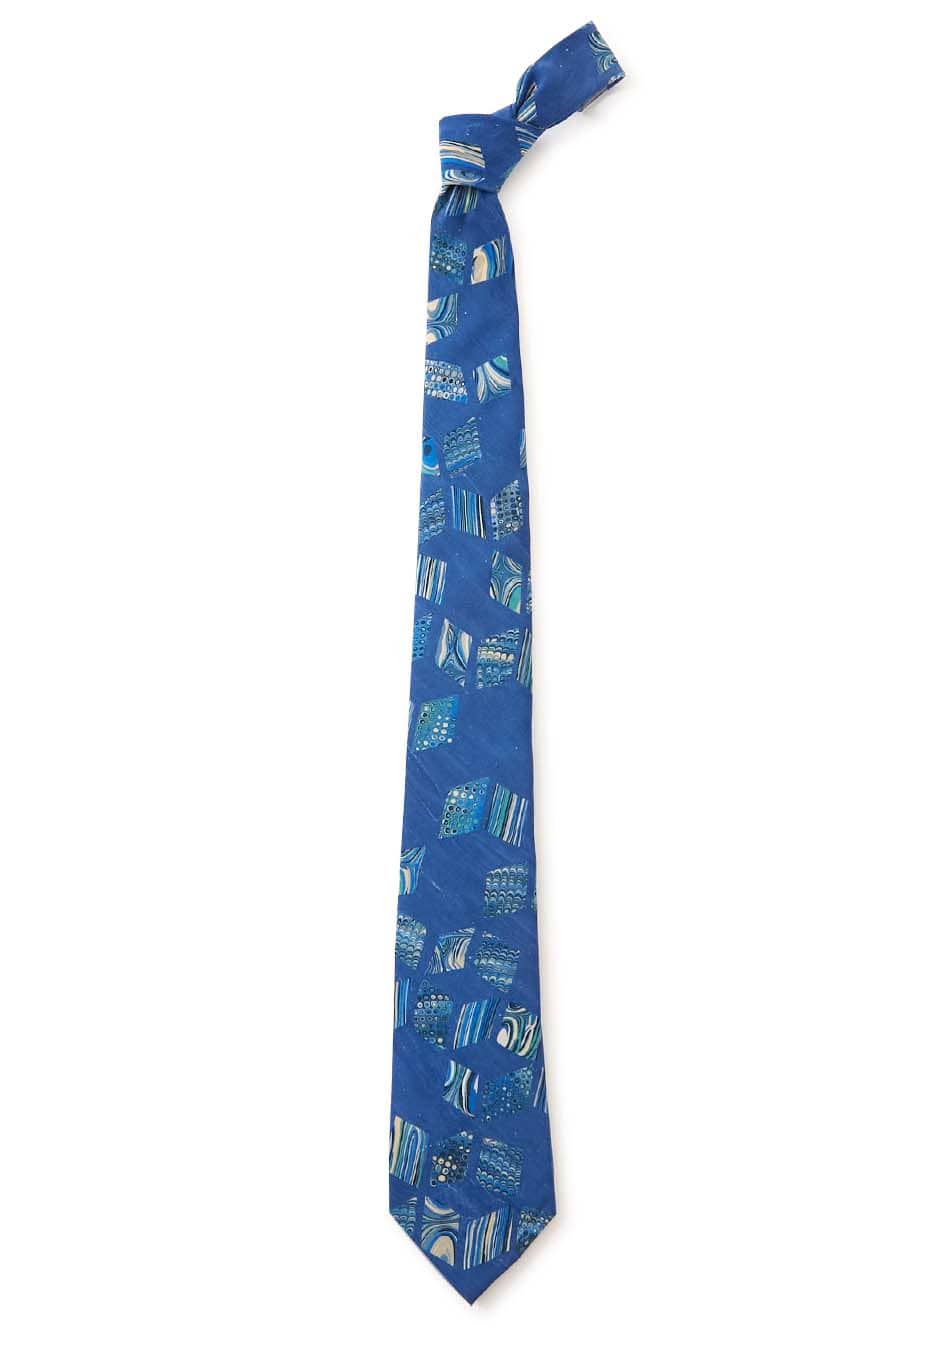 Marble print tie